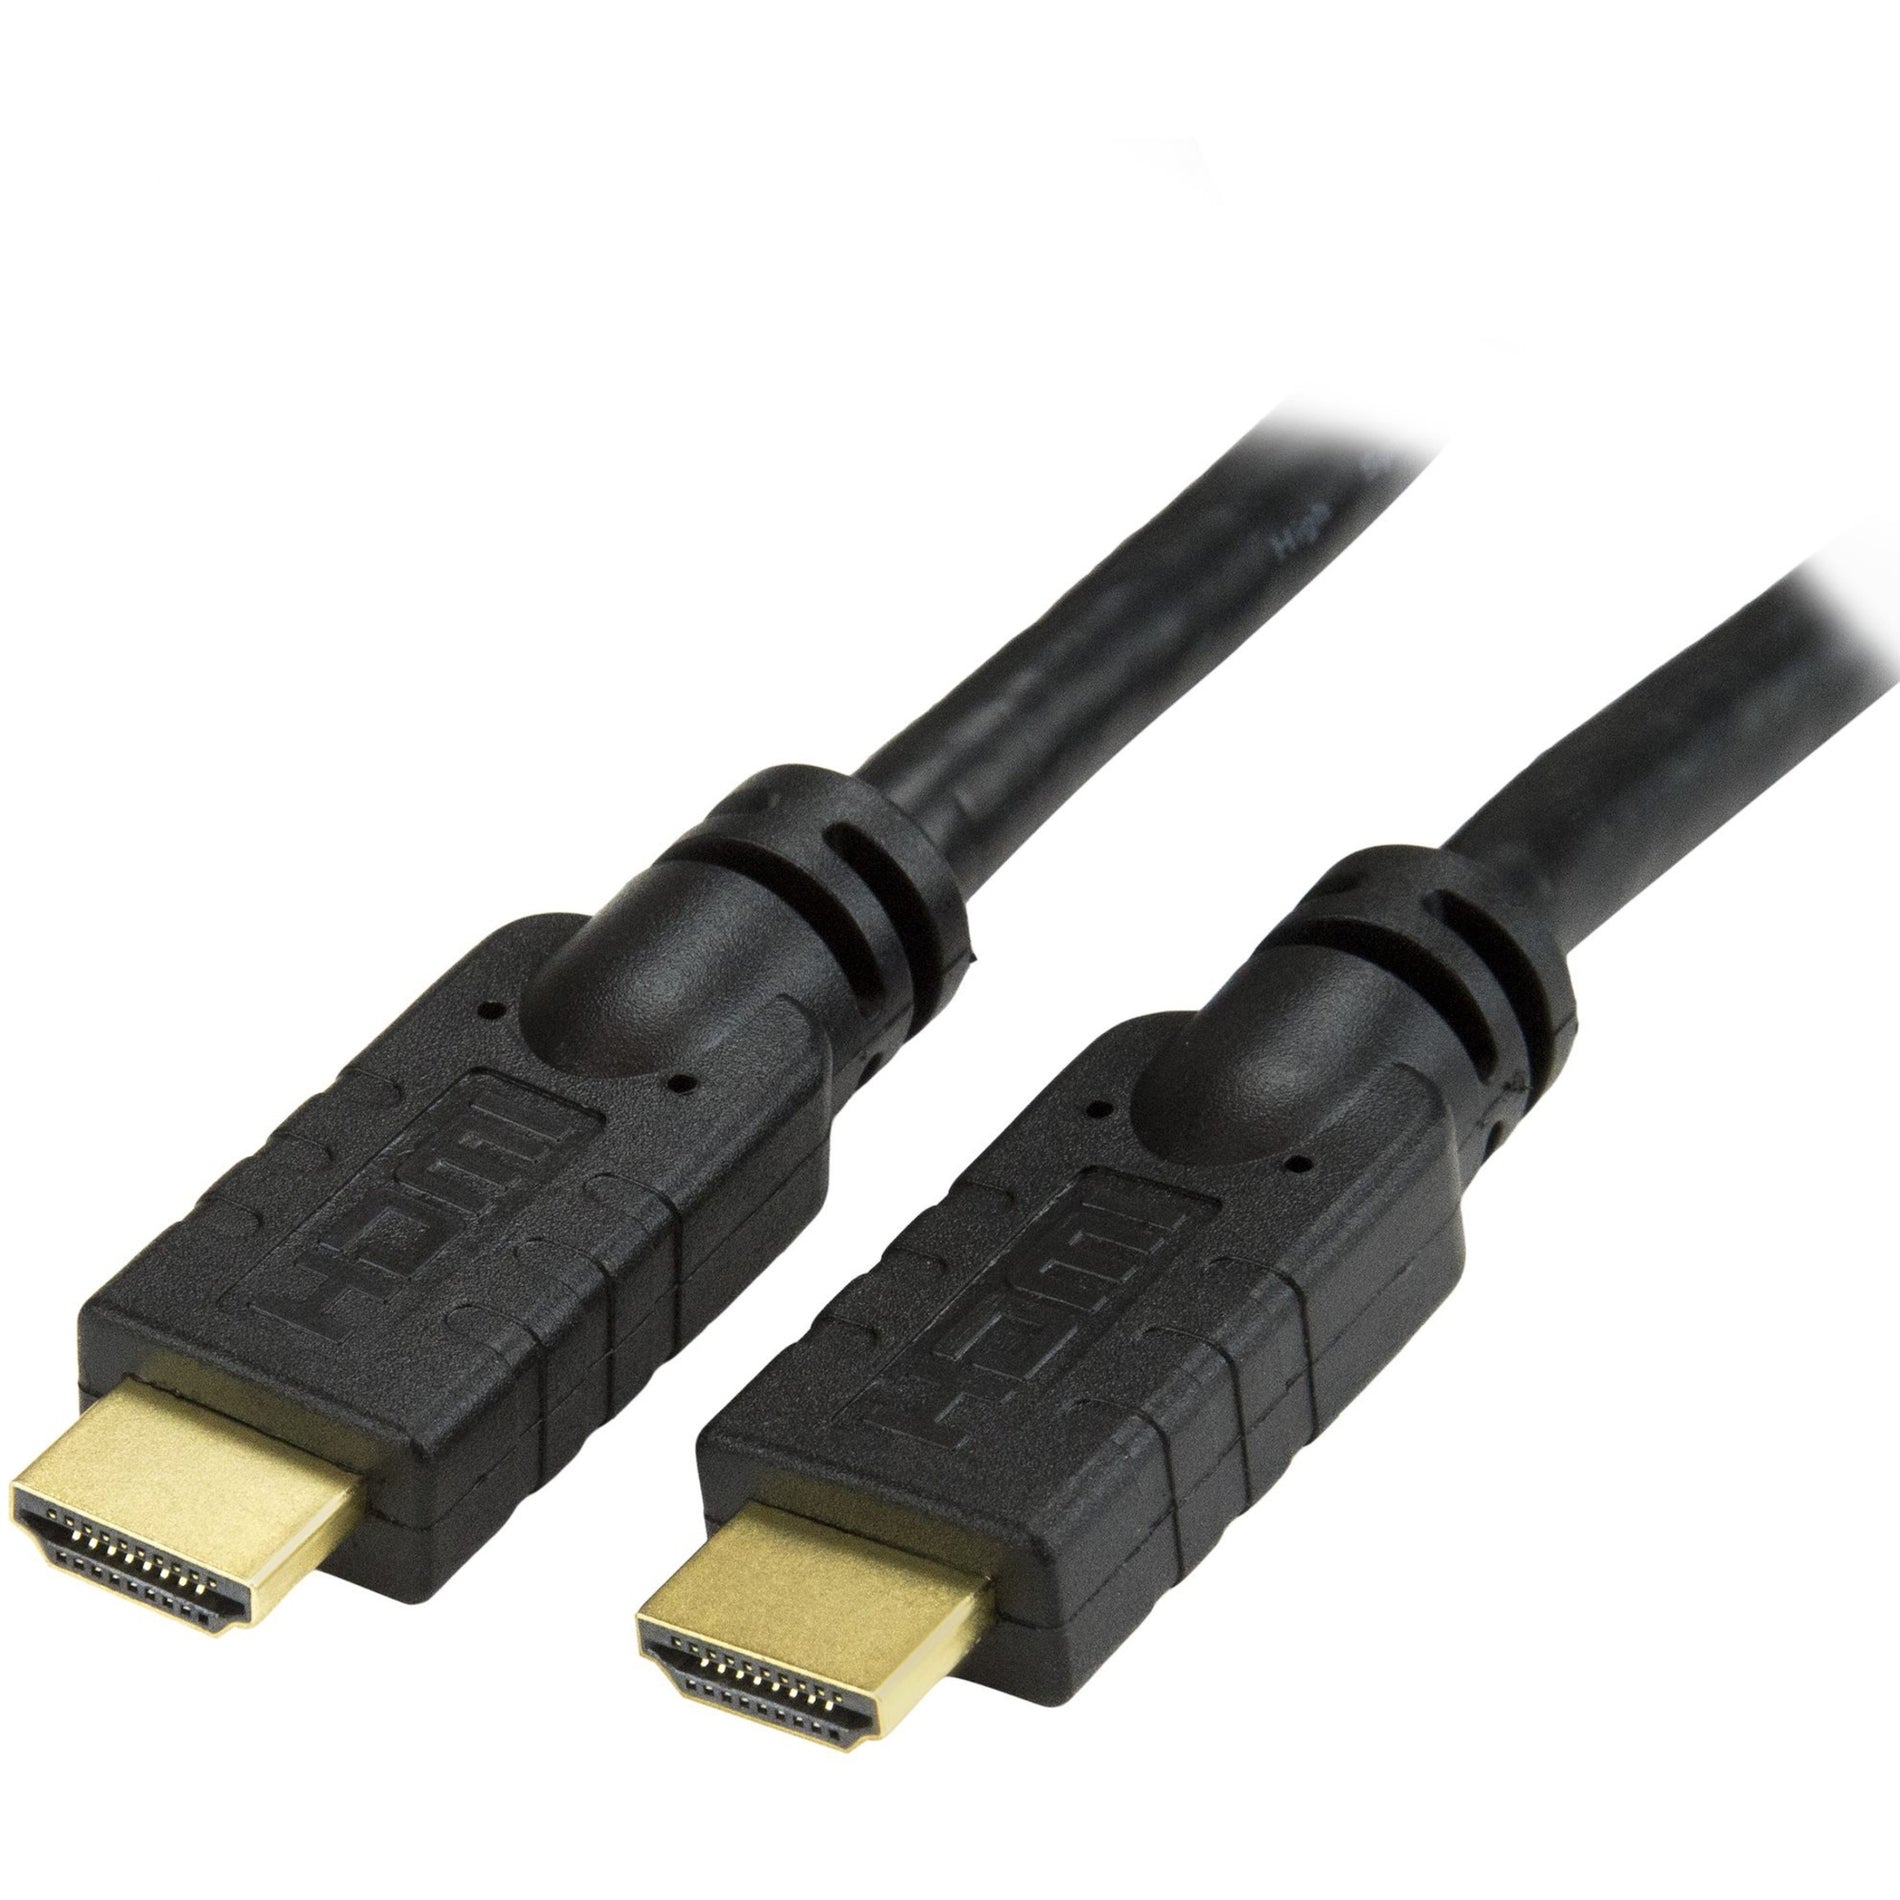 星辰科技 HDMIMM20HS HDMI 音频/视频电缆，20英尺高速HDMI电缆，具有超高清晰度4k x 2k，耐腐蚀，镀金连接器 星辰科技 星辰科技